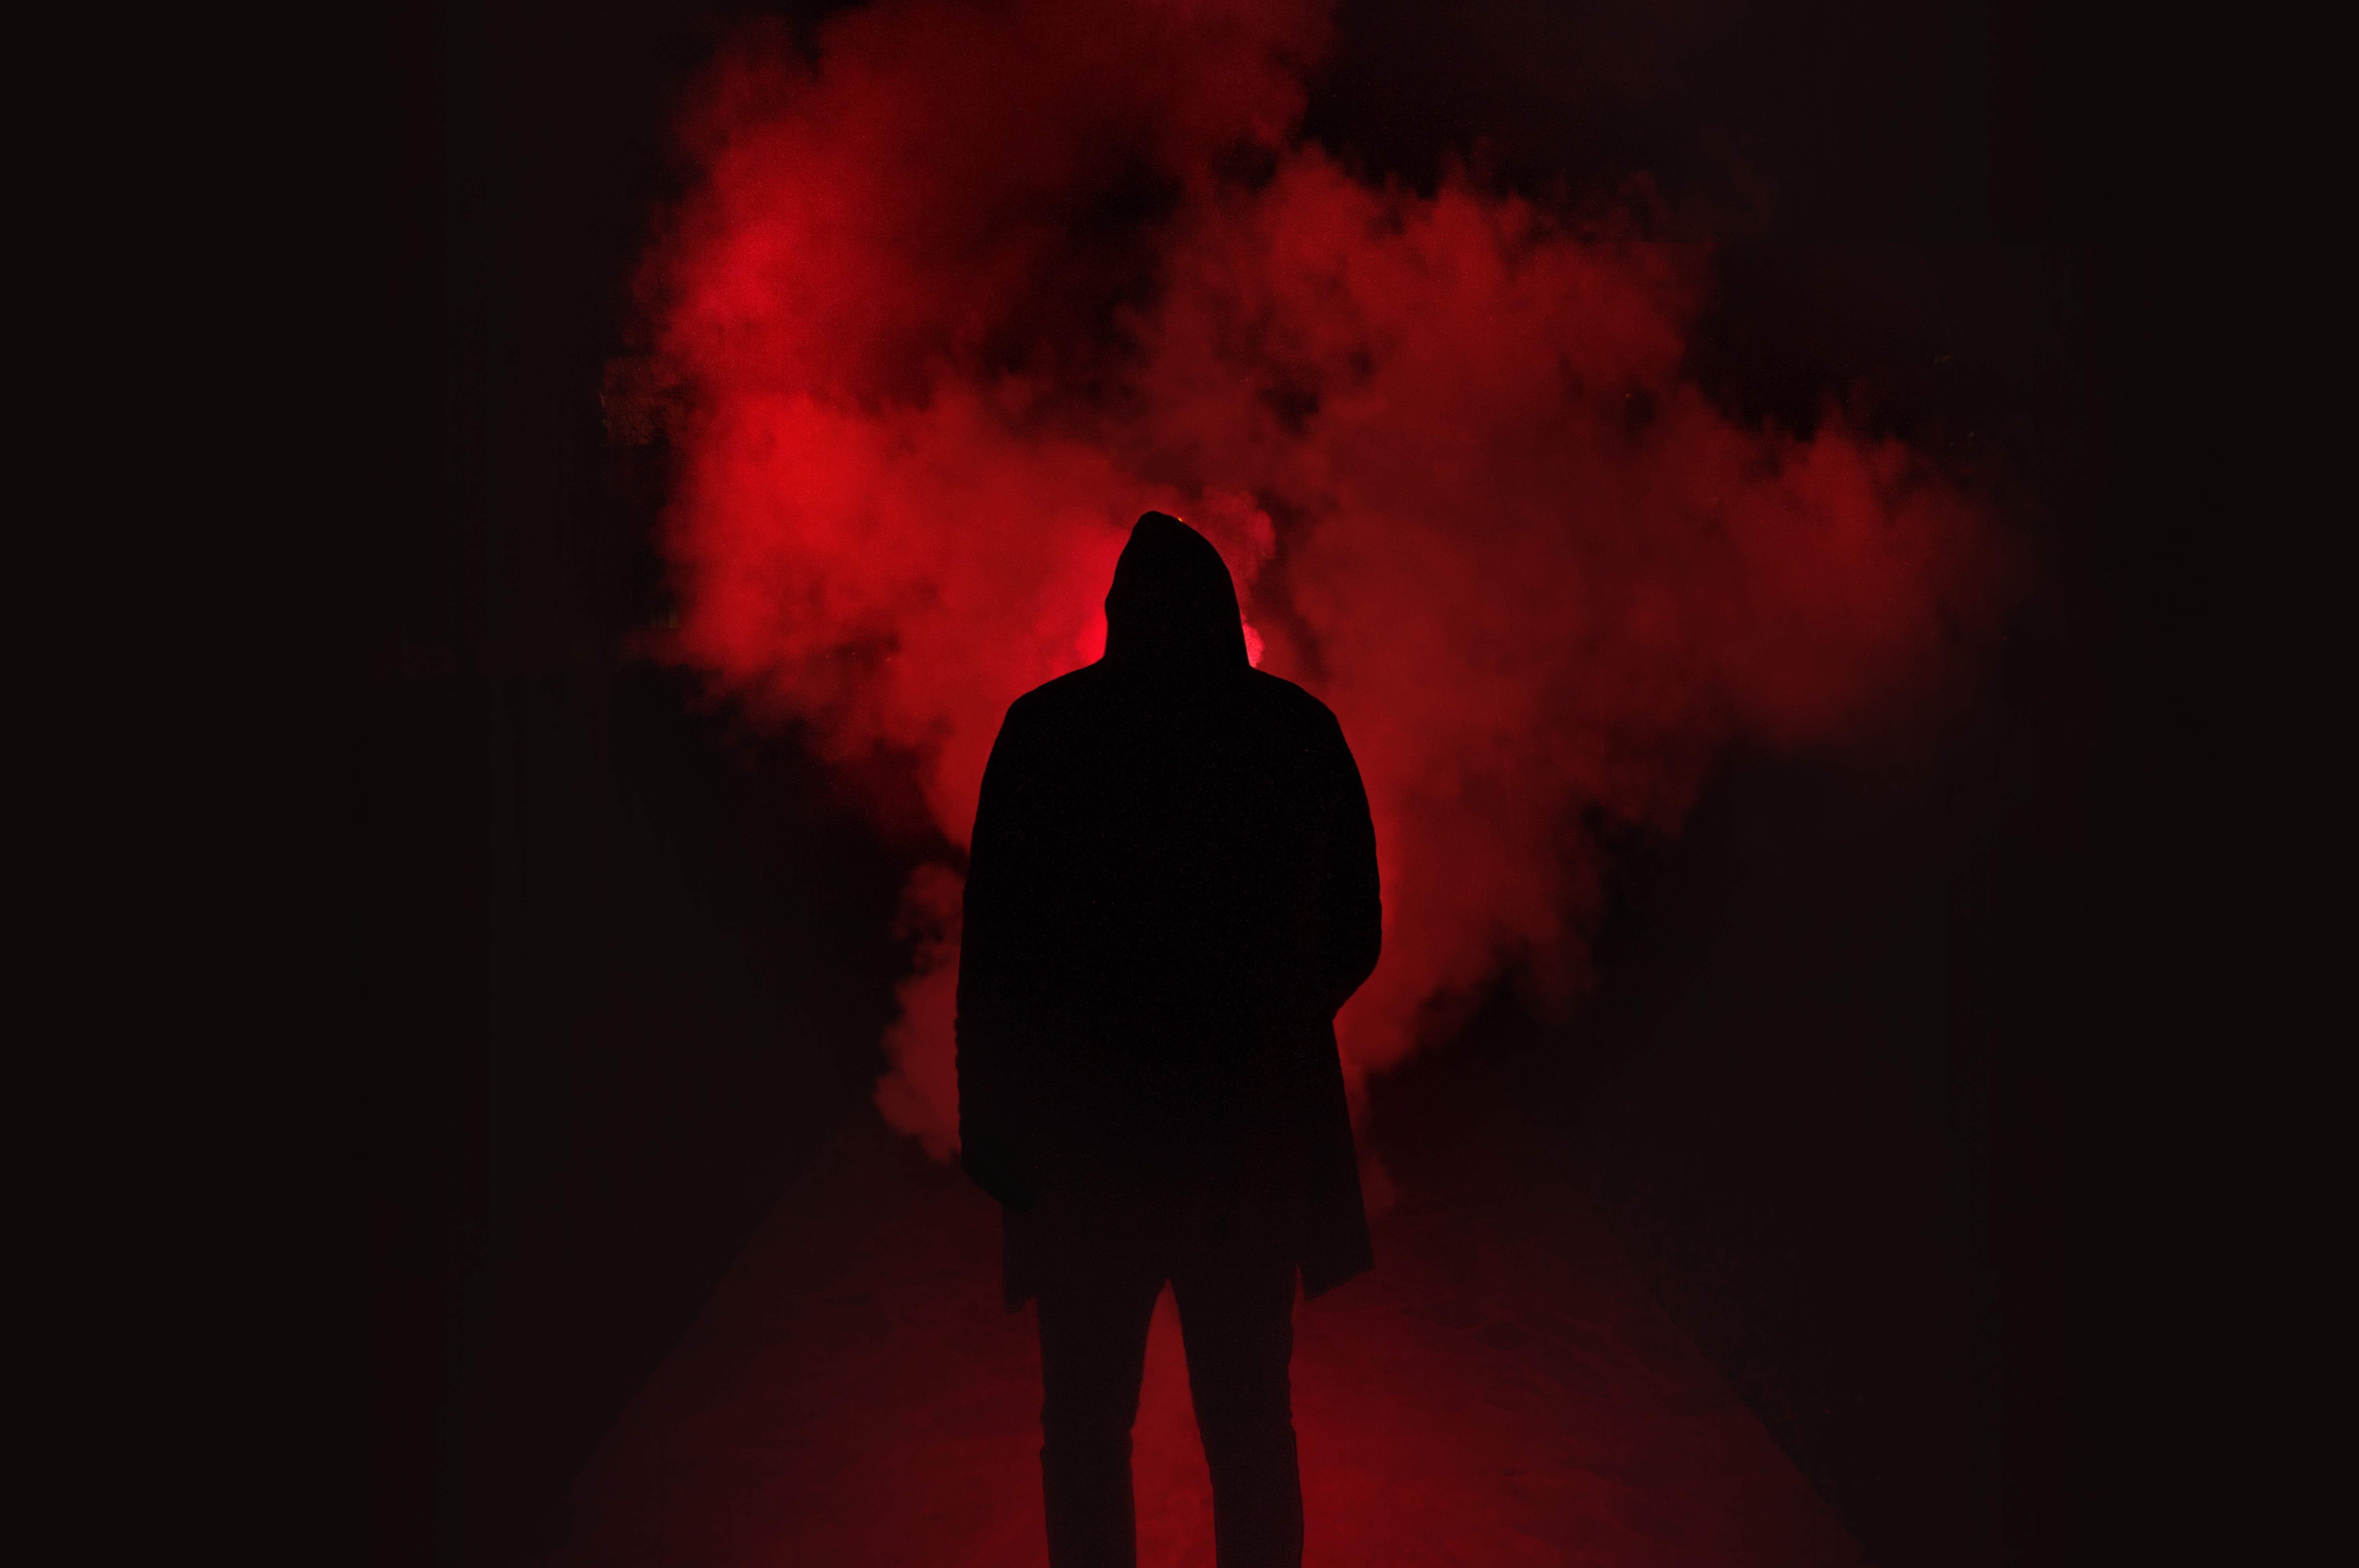 smoke, black, dark, hood, red, silhouette wallpaper for mobile